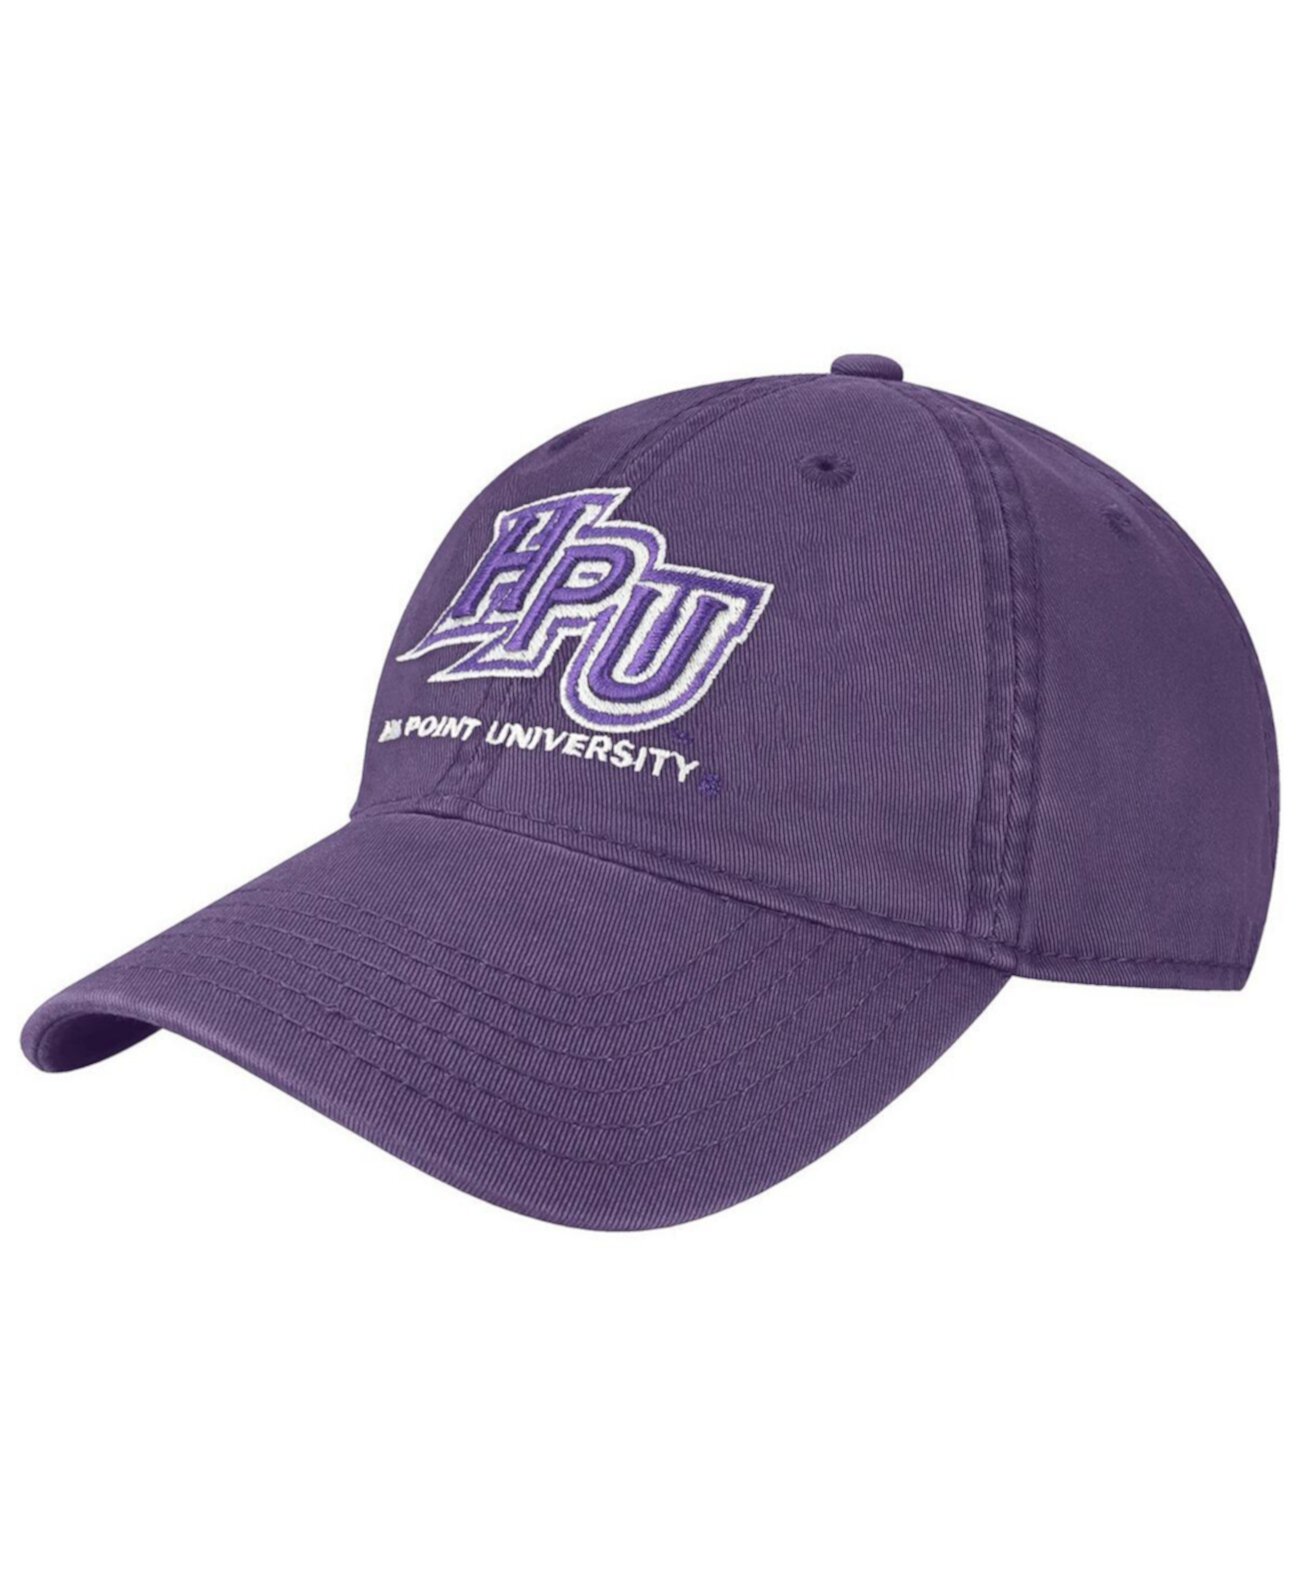 Мужская регулируемая шляпа High Point Panthers фиолетового цвета The Champ Legacy Athletic